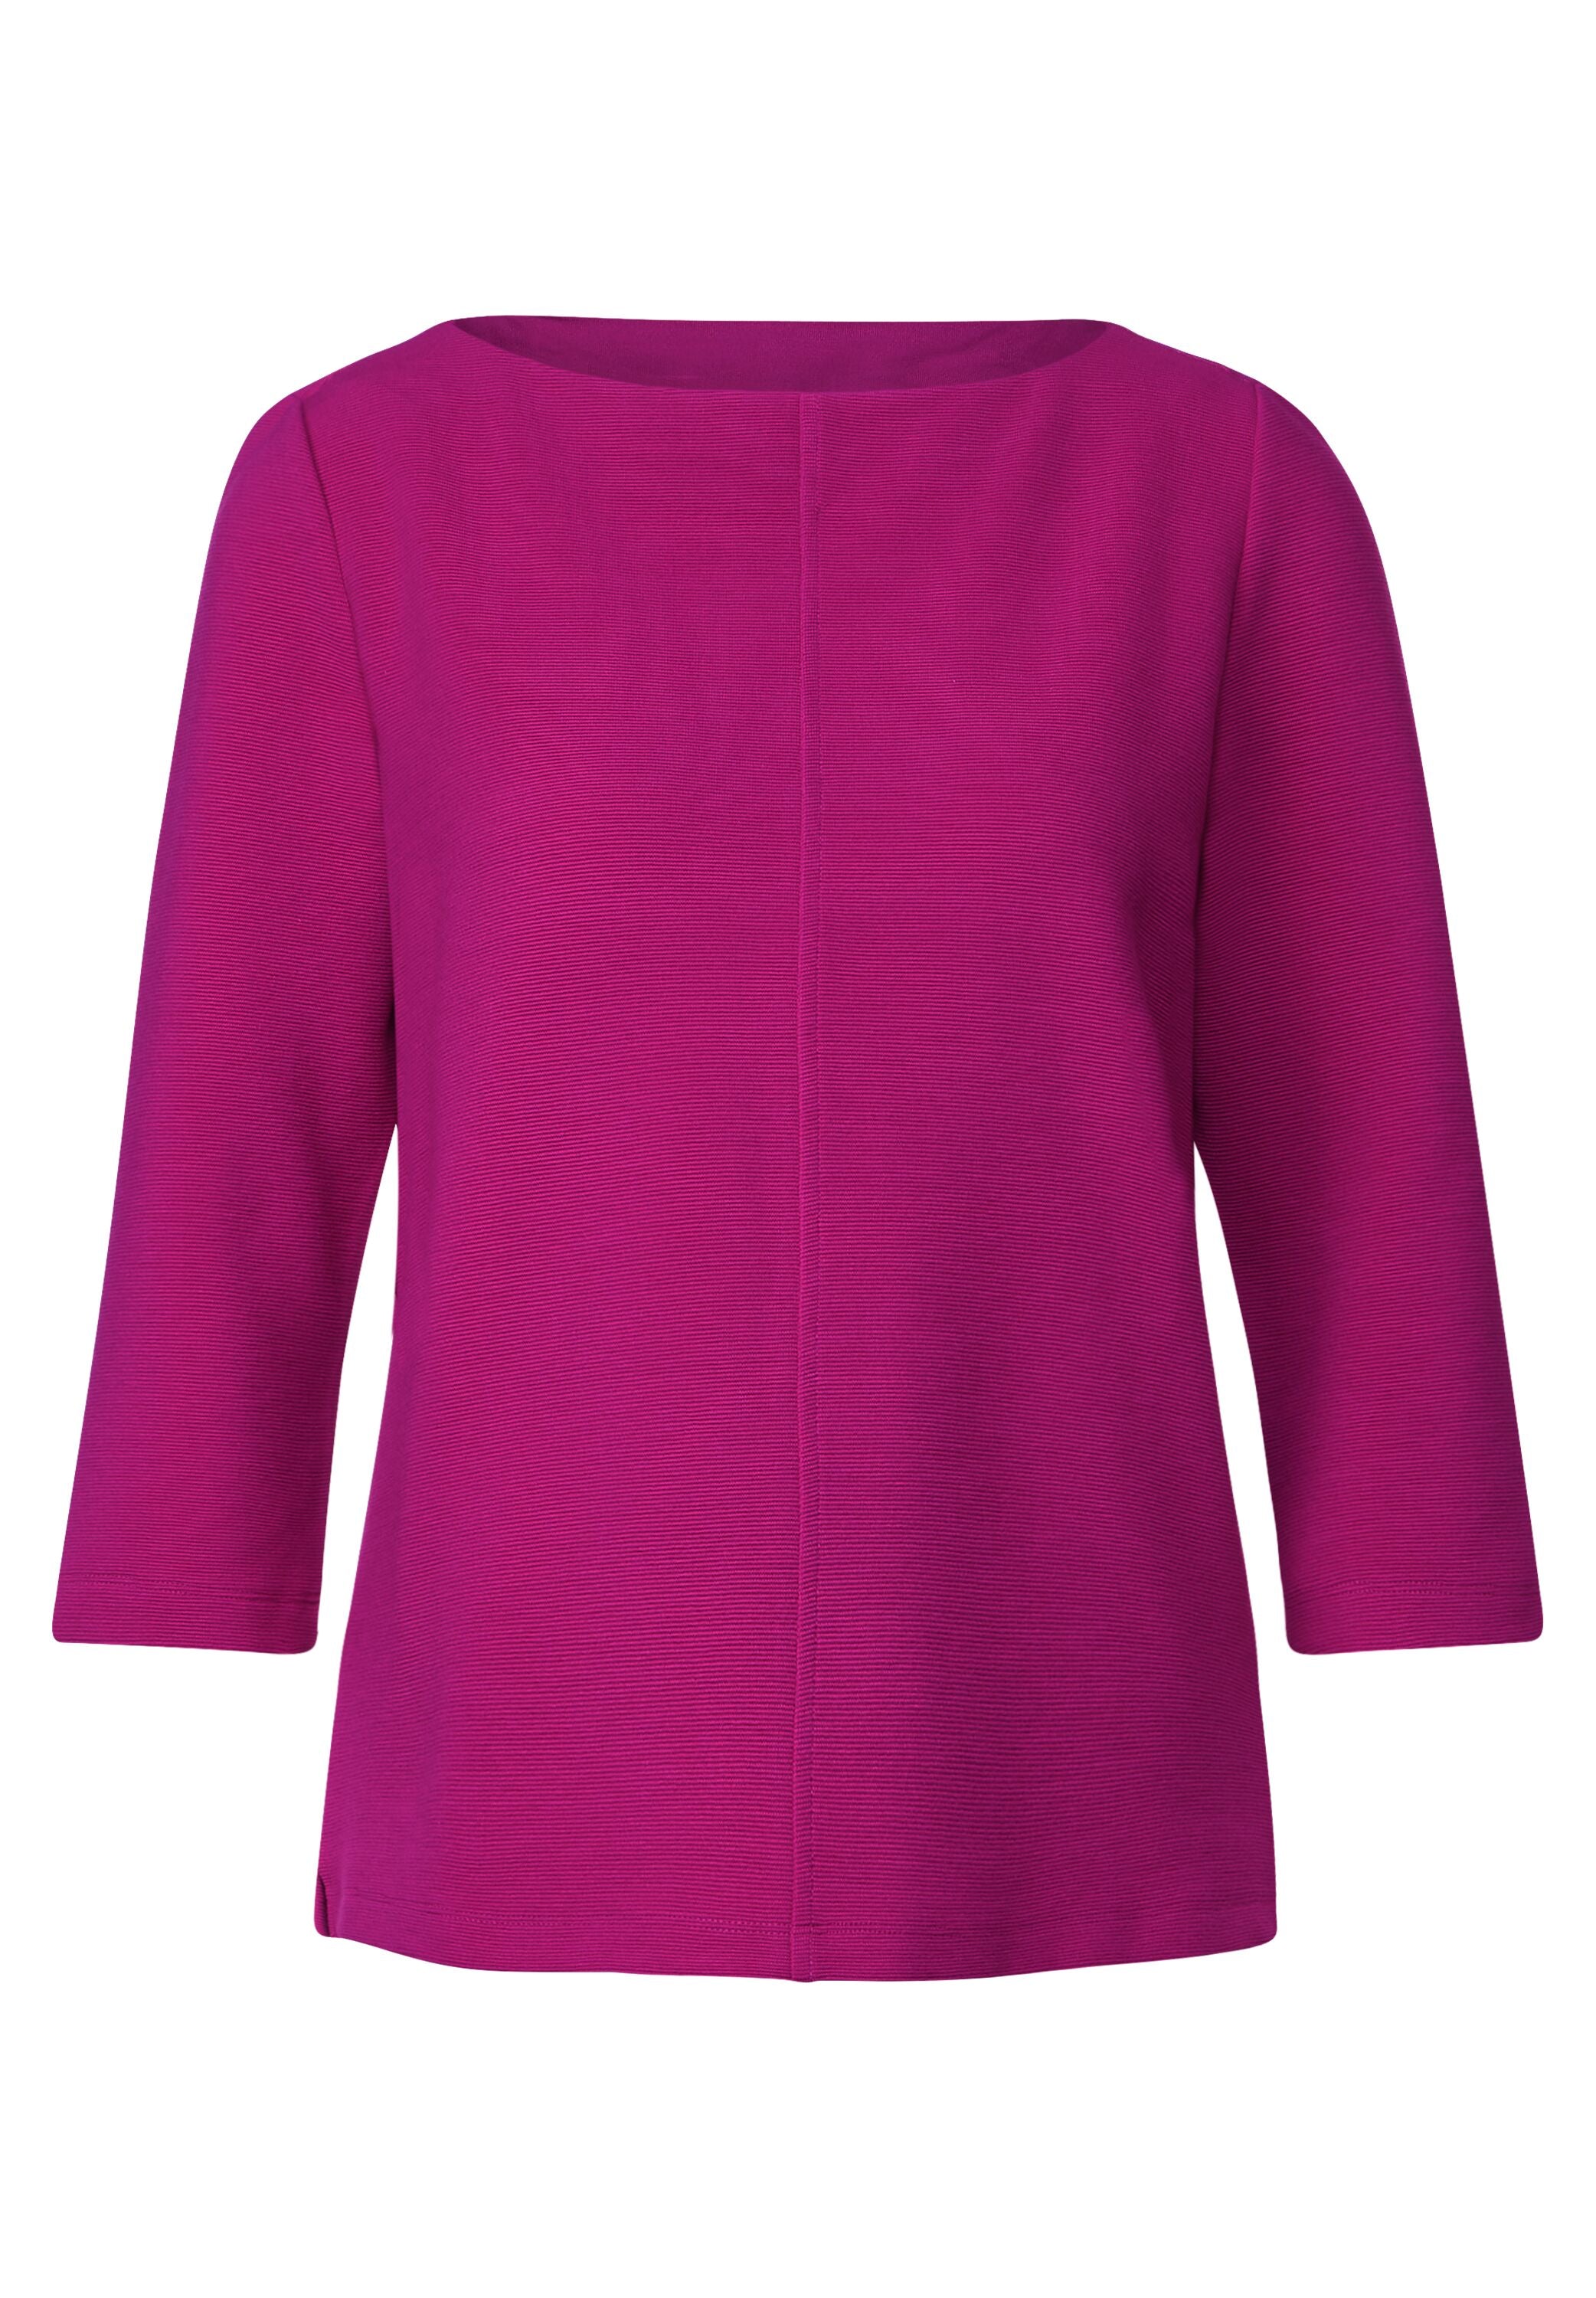 Street One - Shirt bright pink mit – Mode Struktur cozy feiner - TWISTY